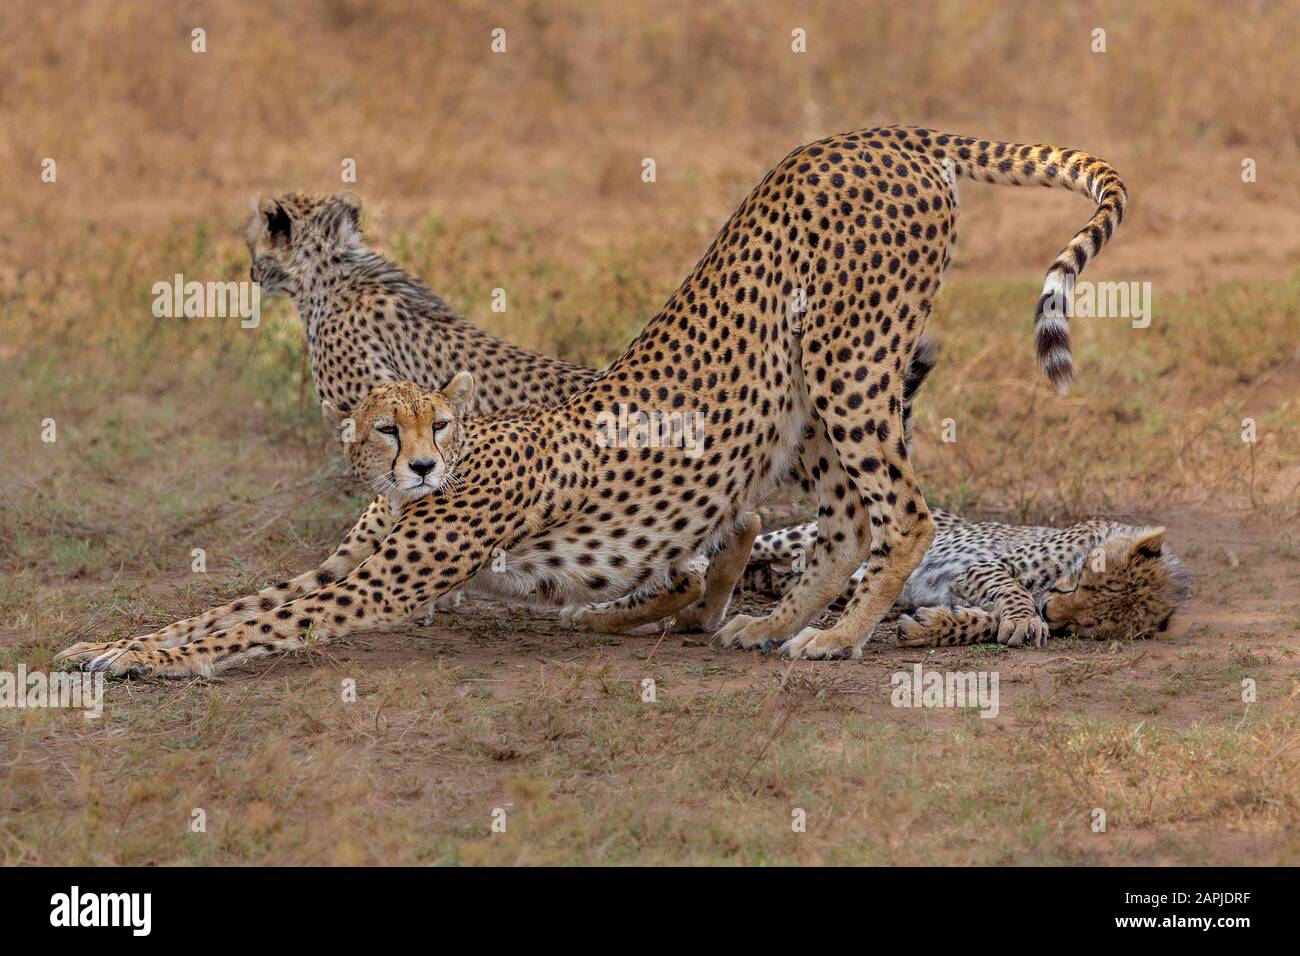 Cheetah and the cubs in Serengeti, Tanzania Stock Photo